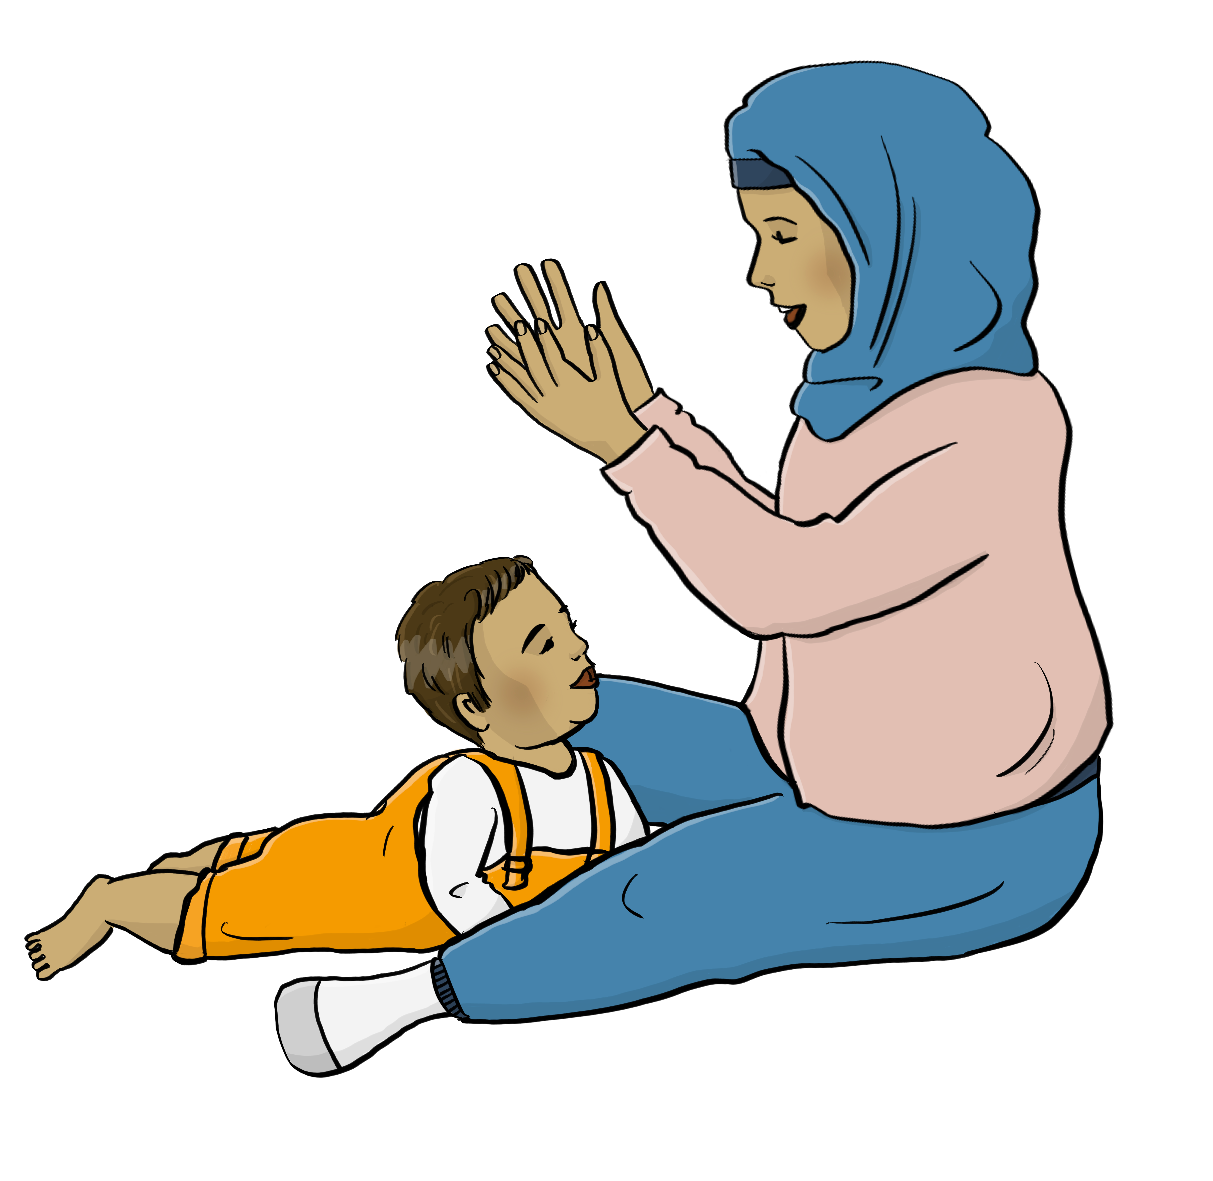 Eine Frau mit Kopftuch sitzt auf dem Boden und klatscht. Vor ihr liegt ein Krabbelkind auf dem Bauch und schaut sie an. 